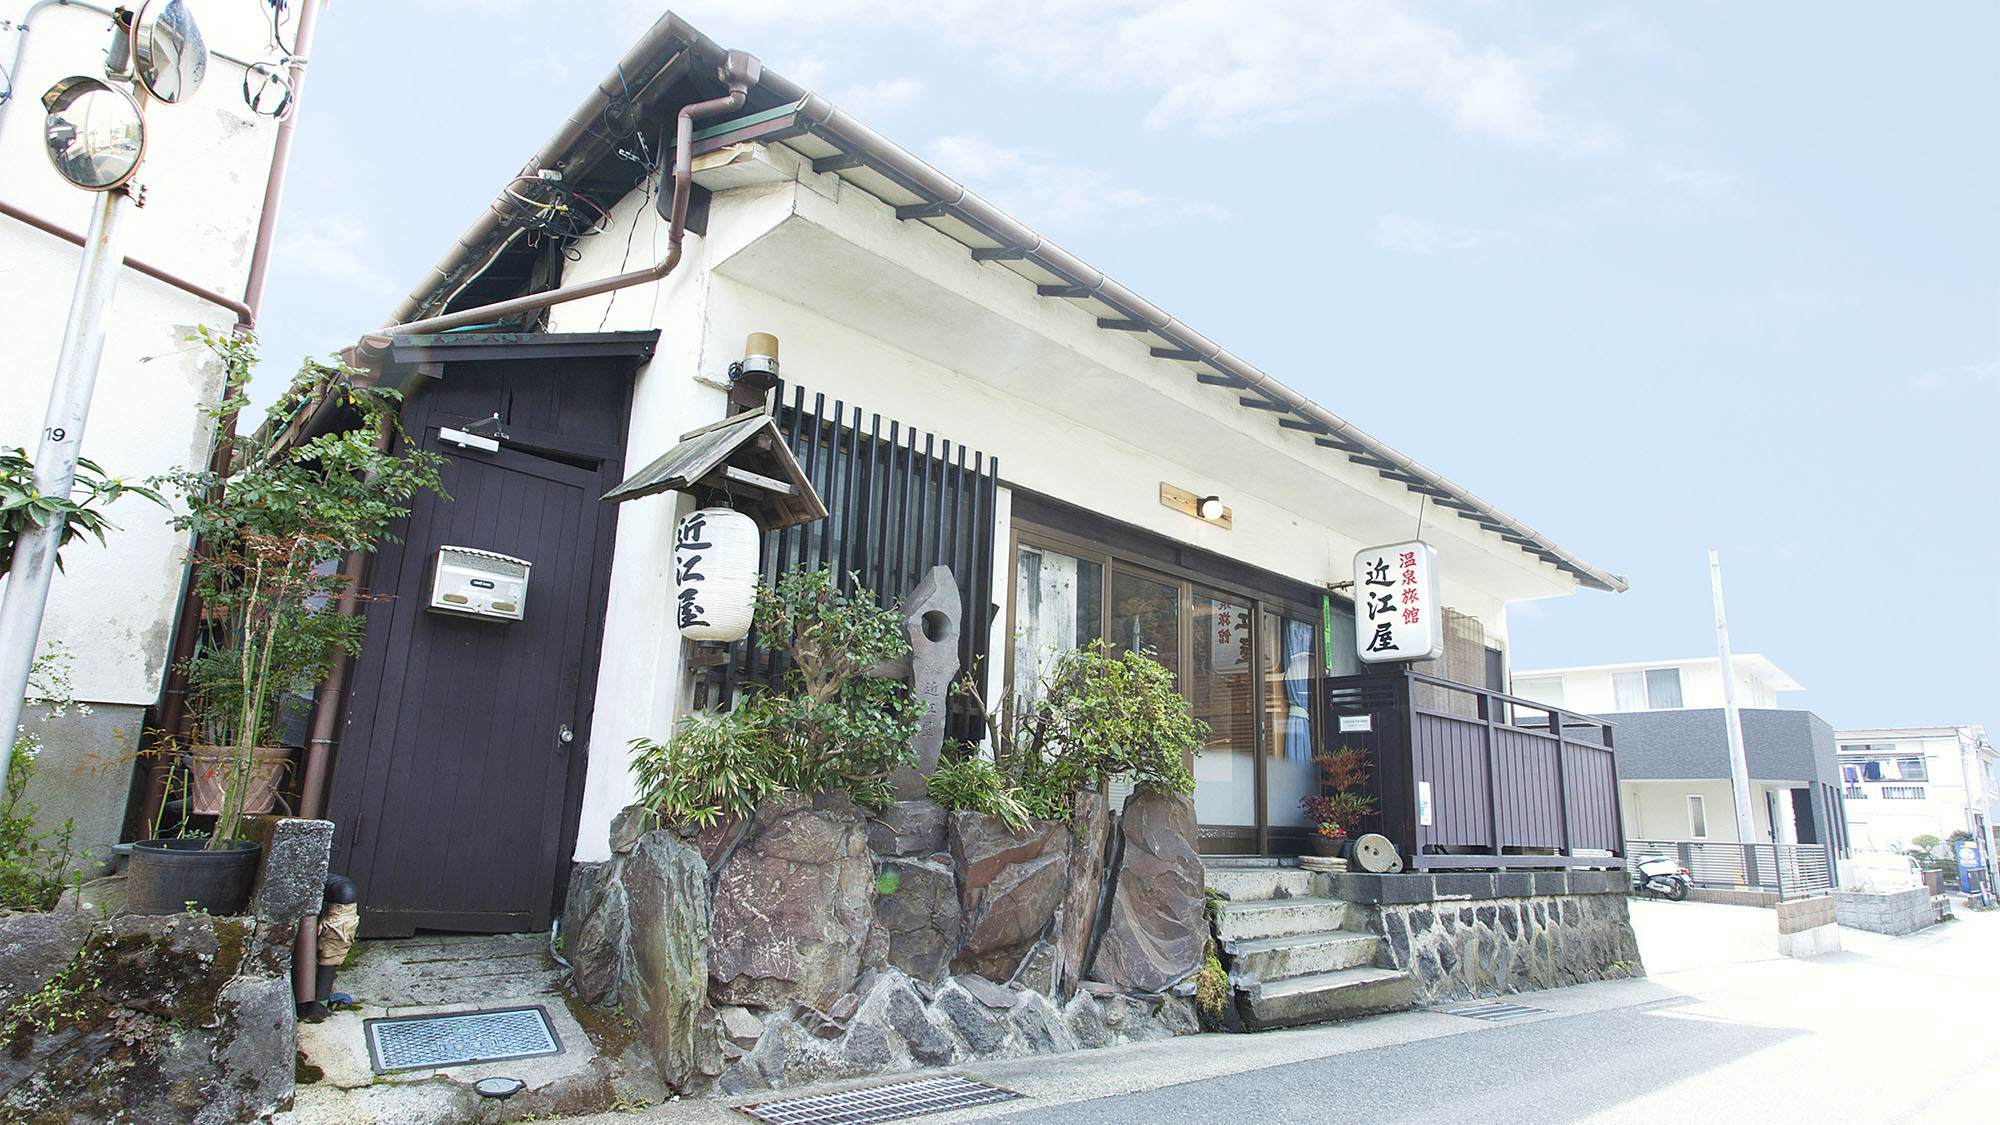 ・箱根旧街道沿いにある小さい温泉宿「近江屋旅館」にようこそ